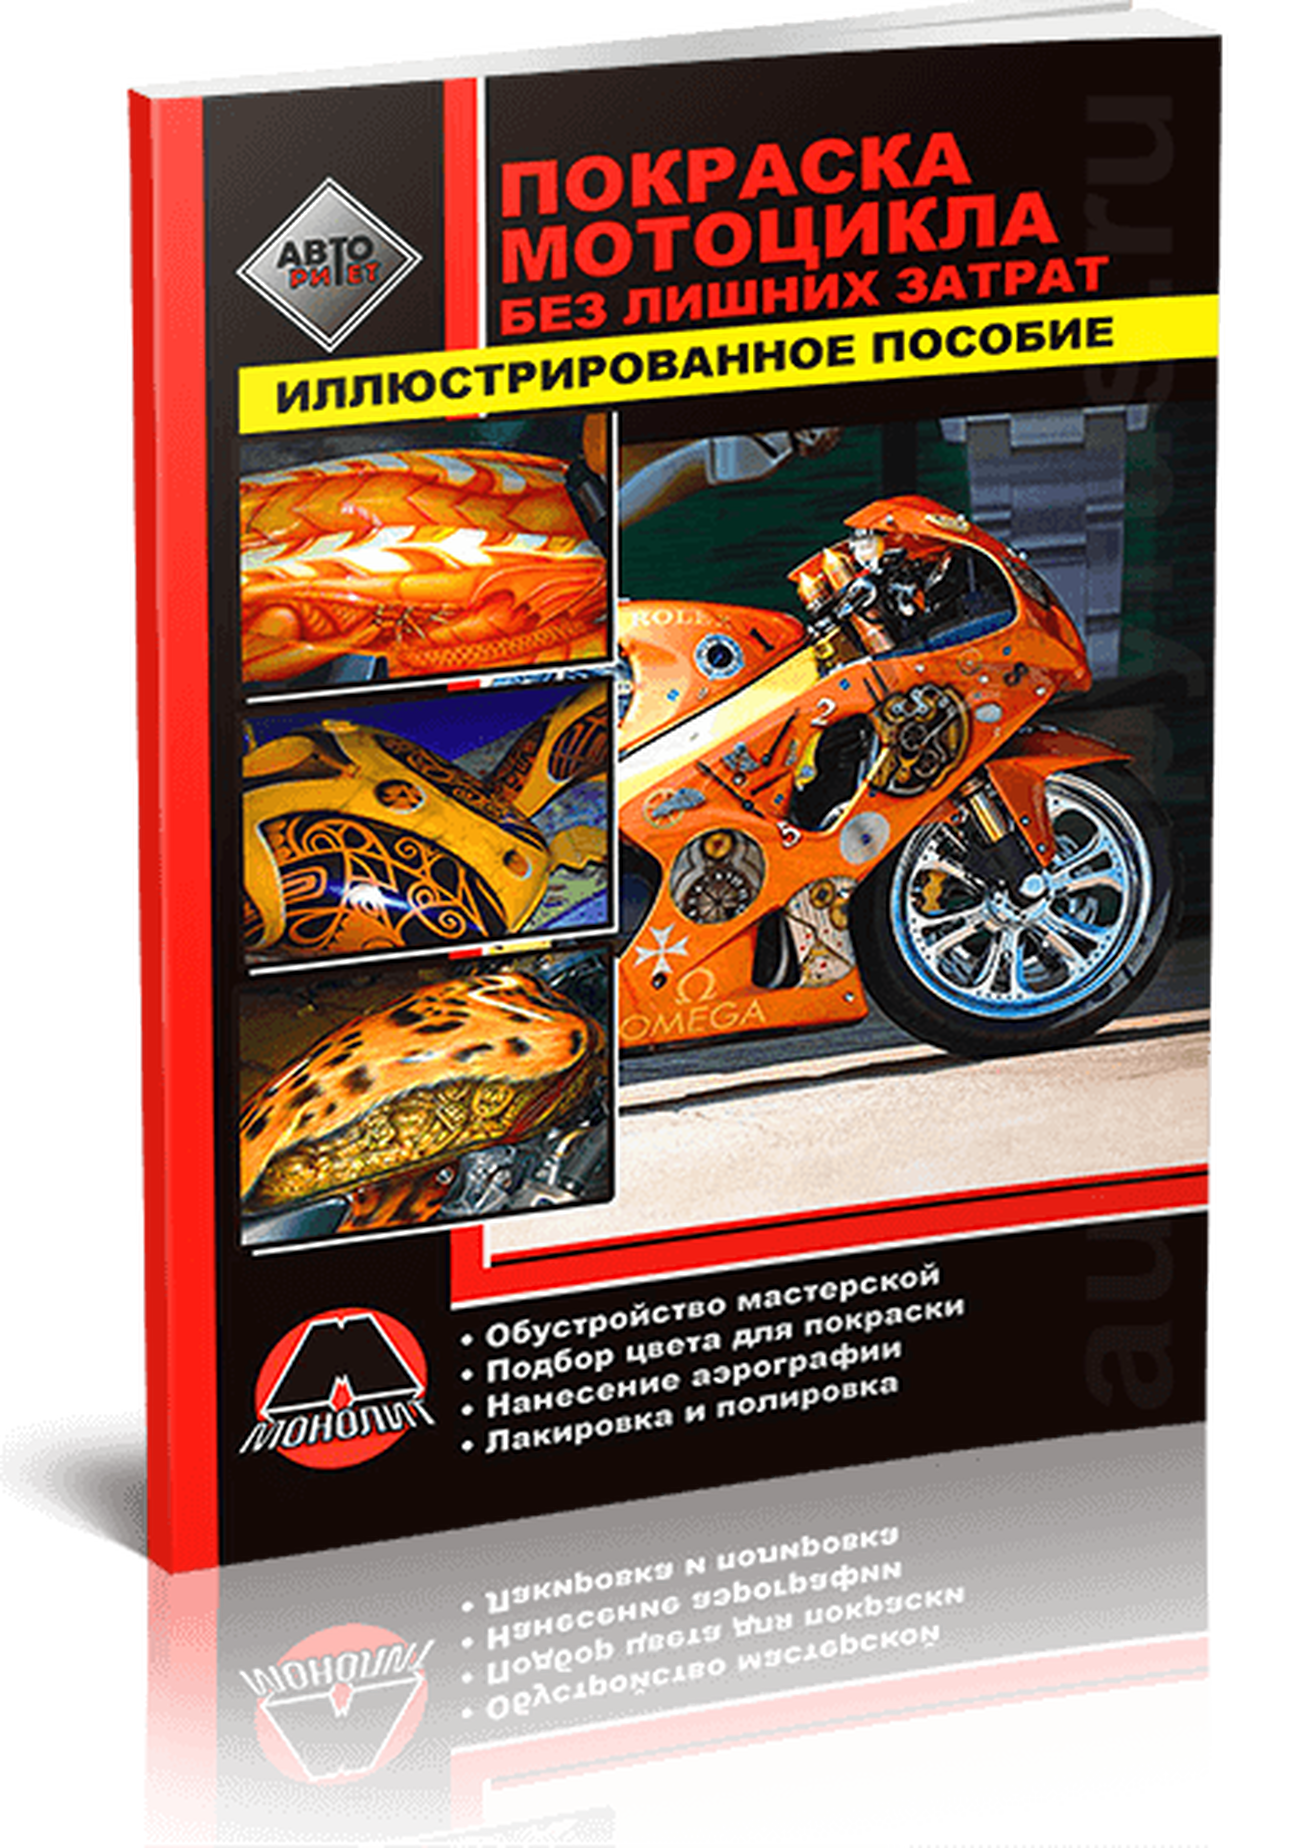 Автокнига: Покраска мотоцикла без лишних затрат - Иллюстрированное пособие, 978-888-4632-12-8, издательство Монолит